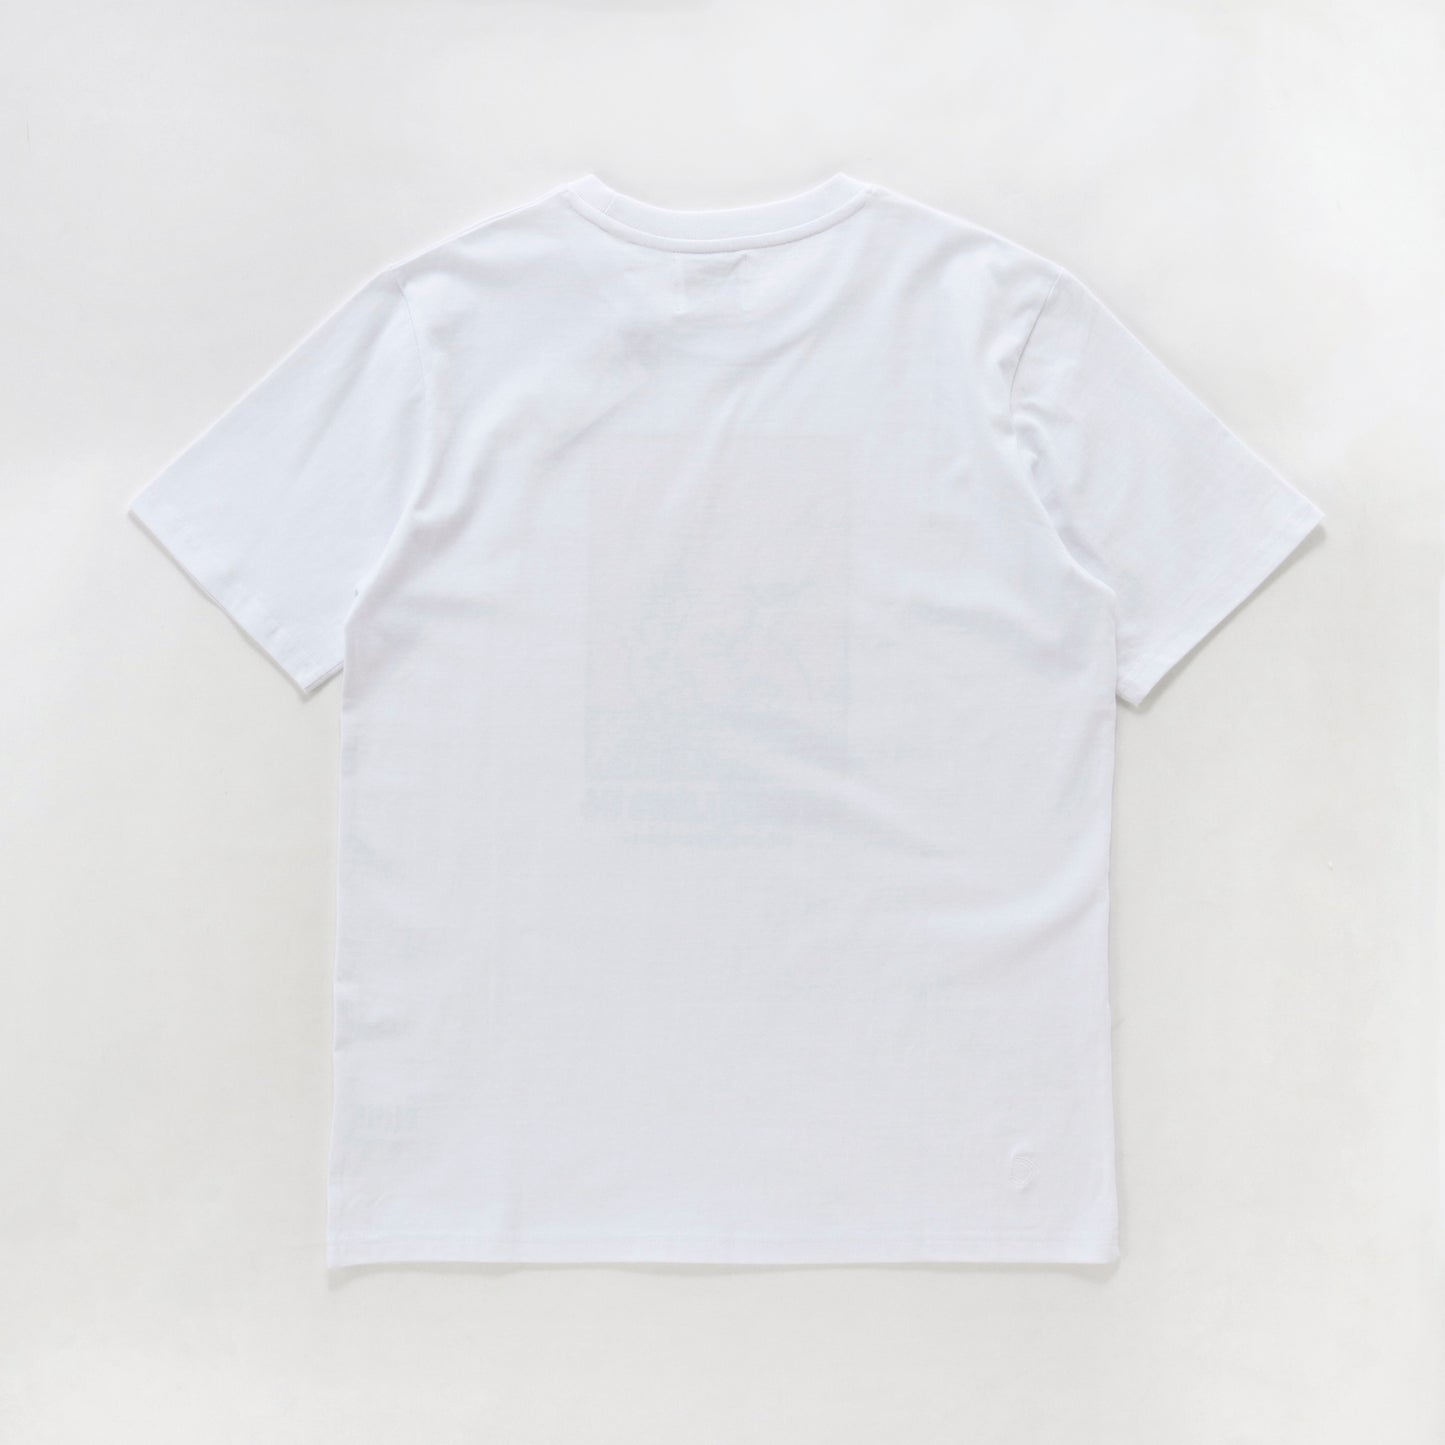 DAUCH!LAND '06 Tシャツ - UNISEX - ホワイト